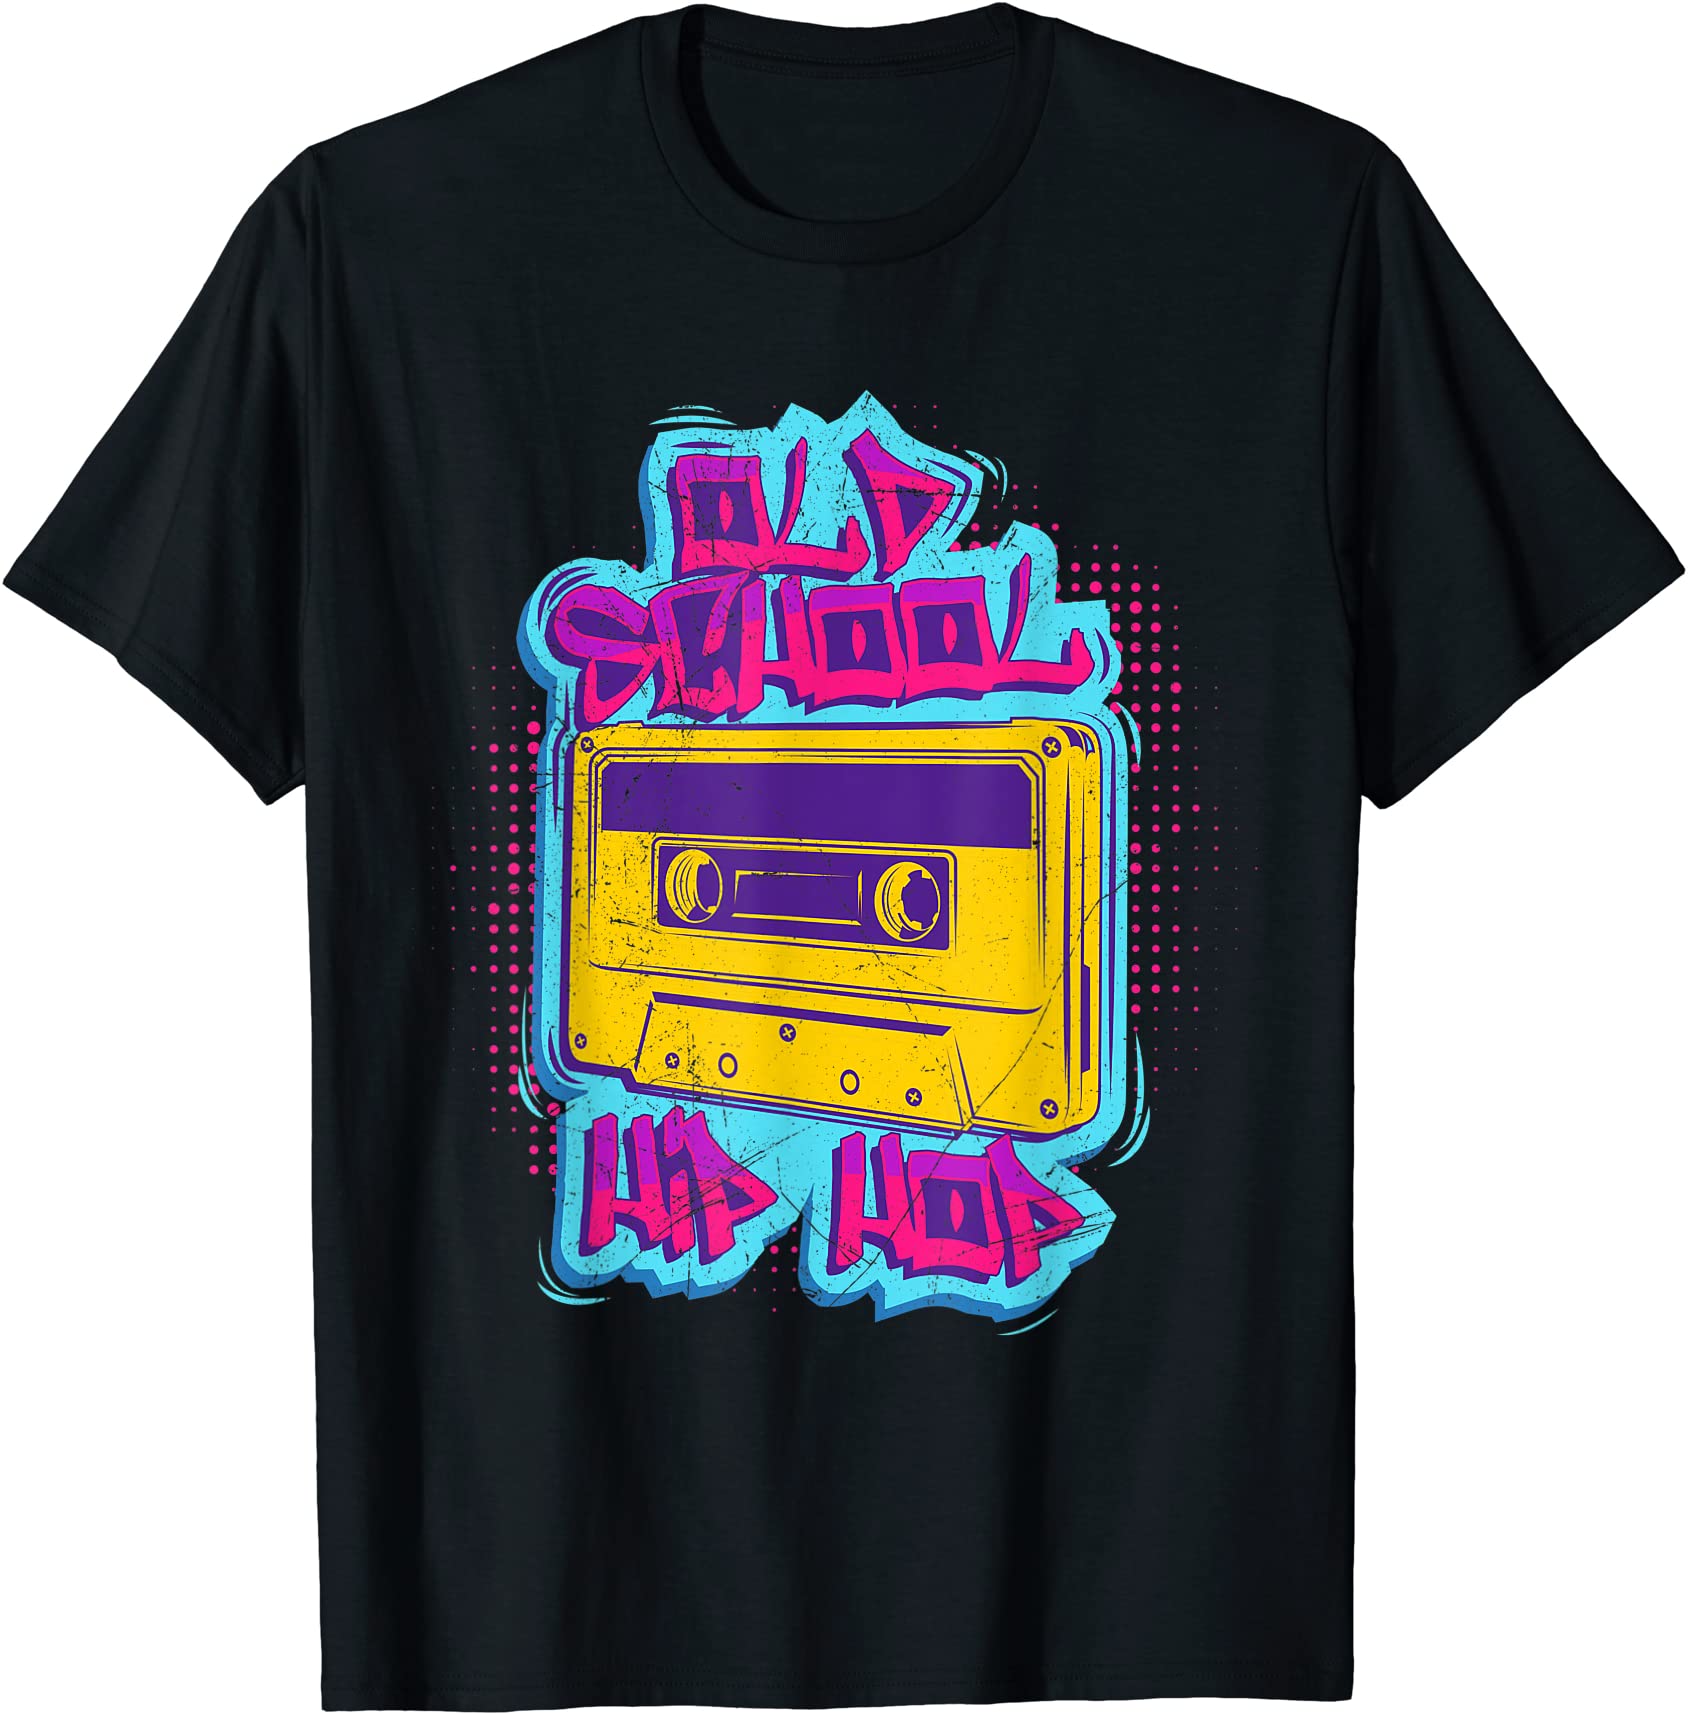 oldschool hip hop rap music rap 90s music cassette hip hop t shirt men ...